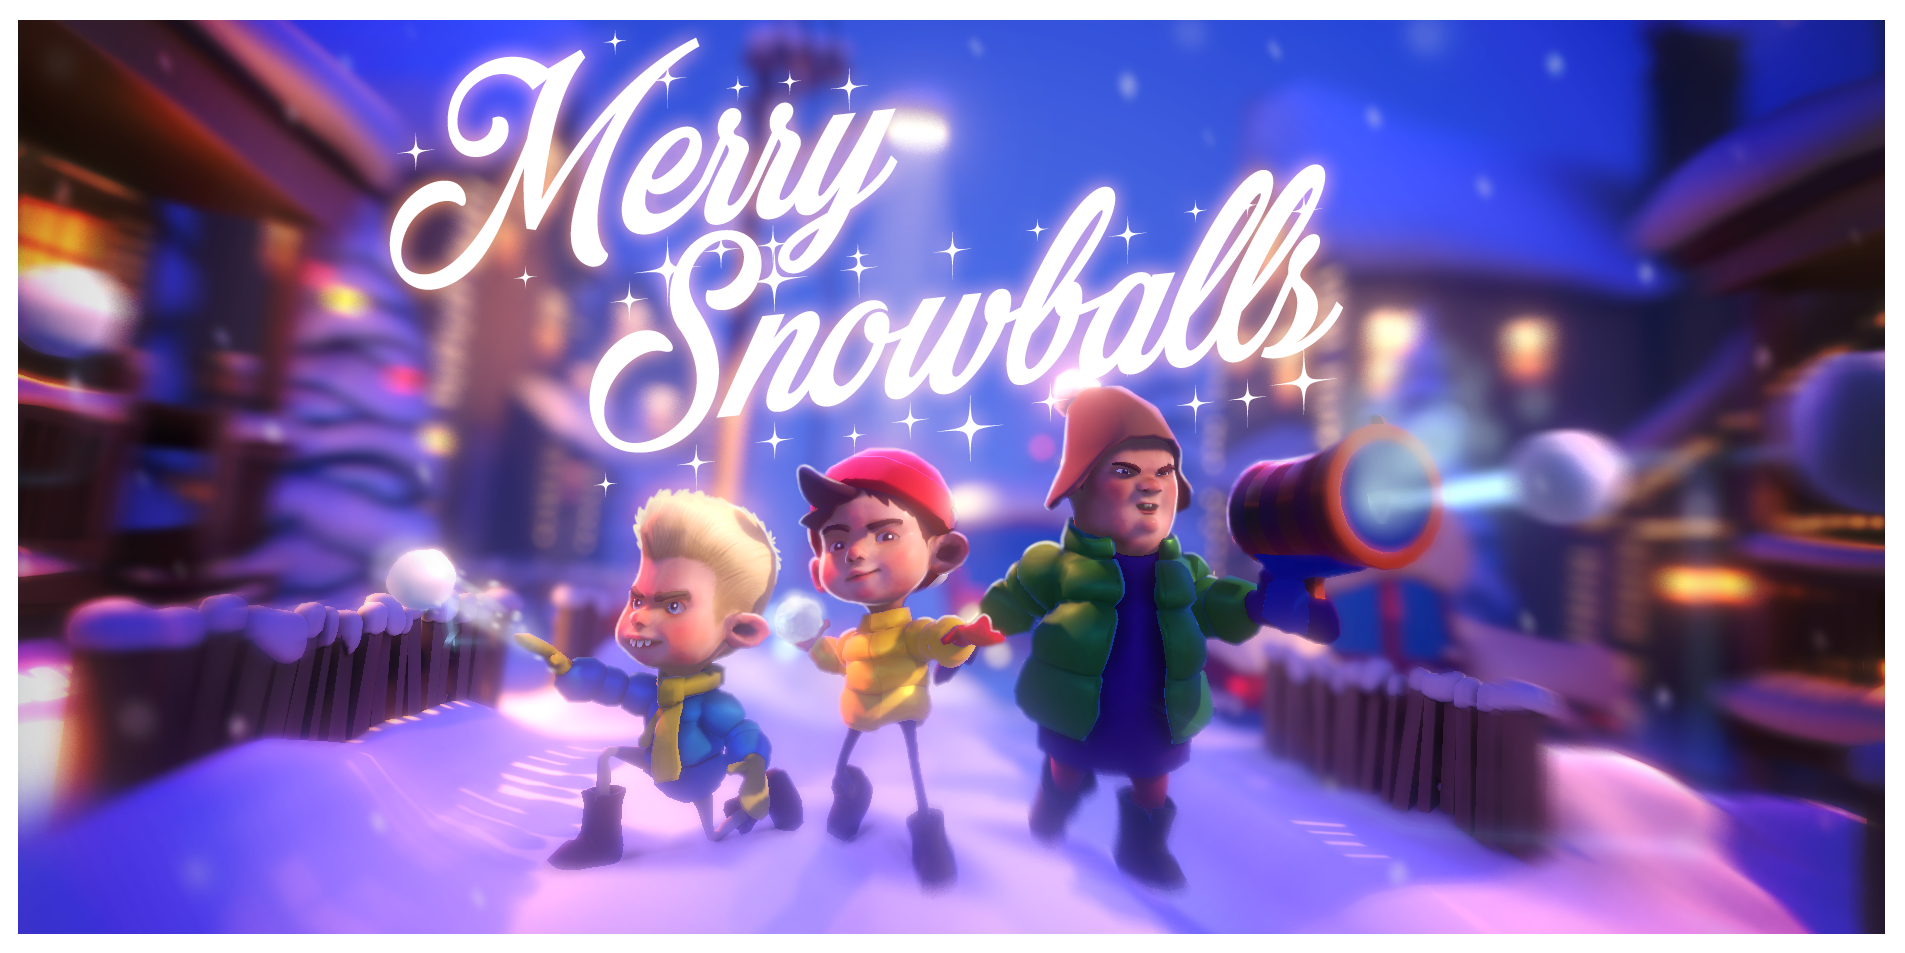 Merry Snowballs — А давайте поиграем в снежки с поддержкой дополненной реальности?!